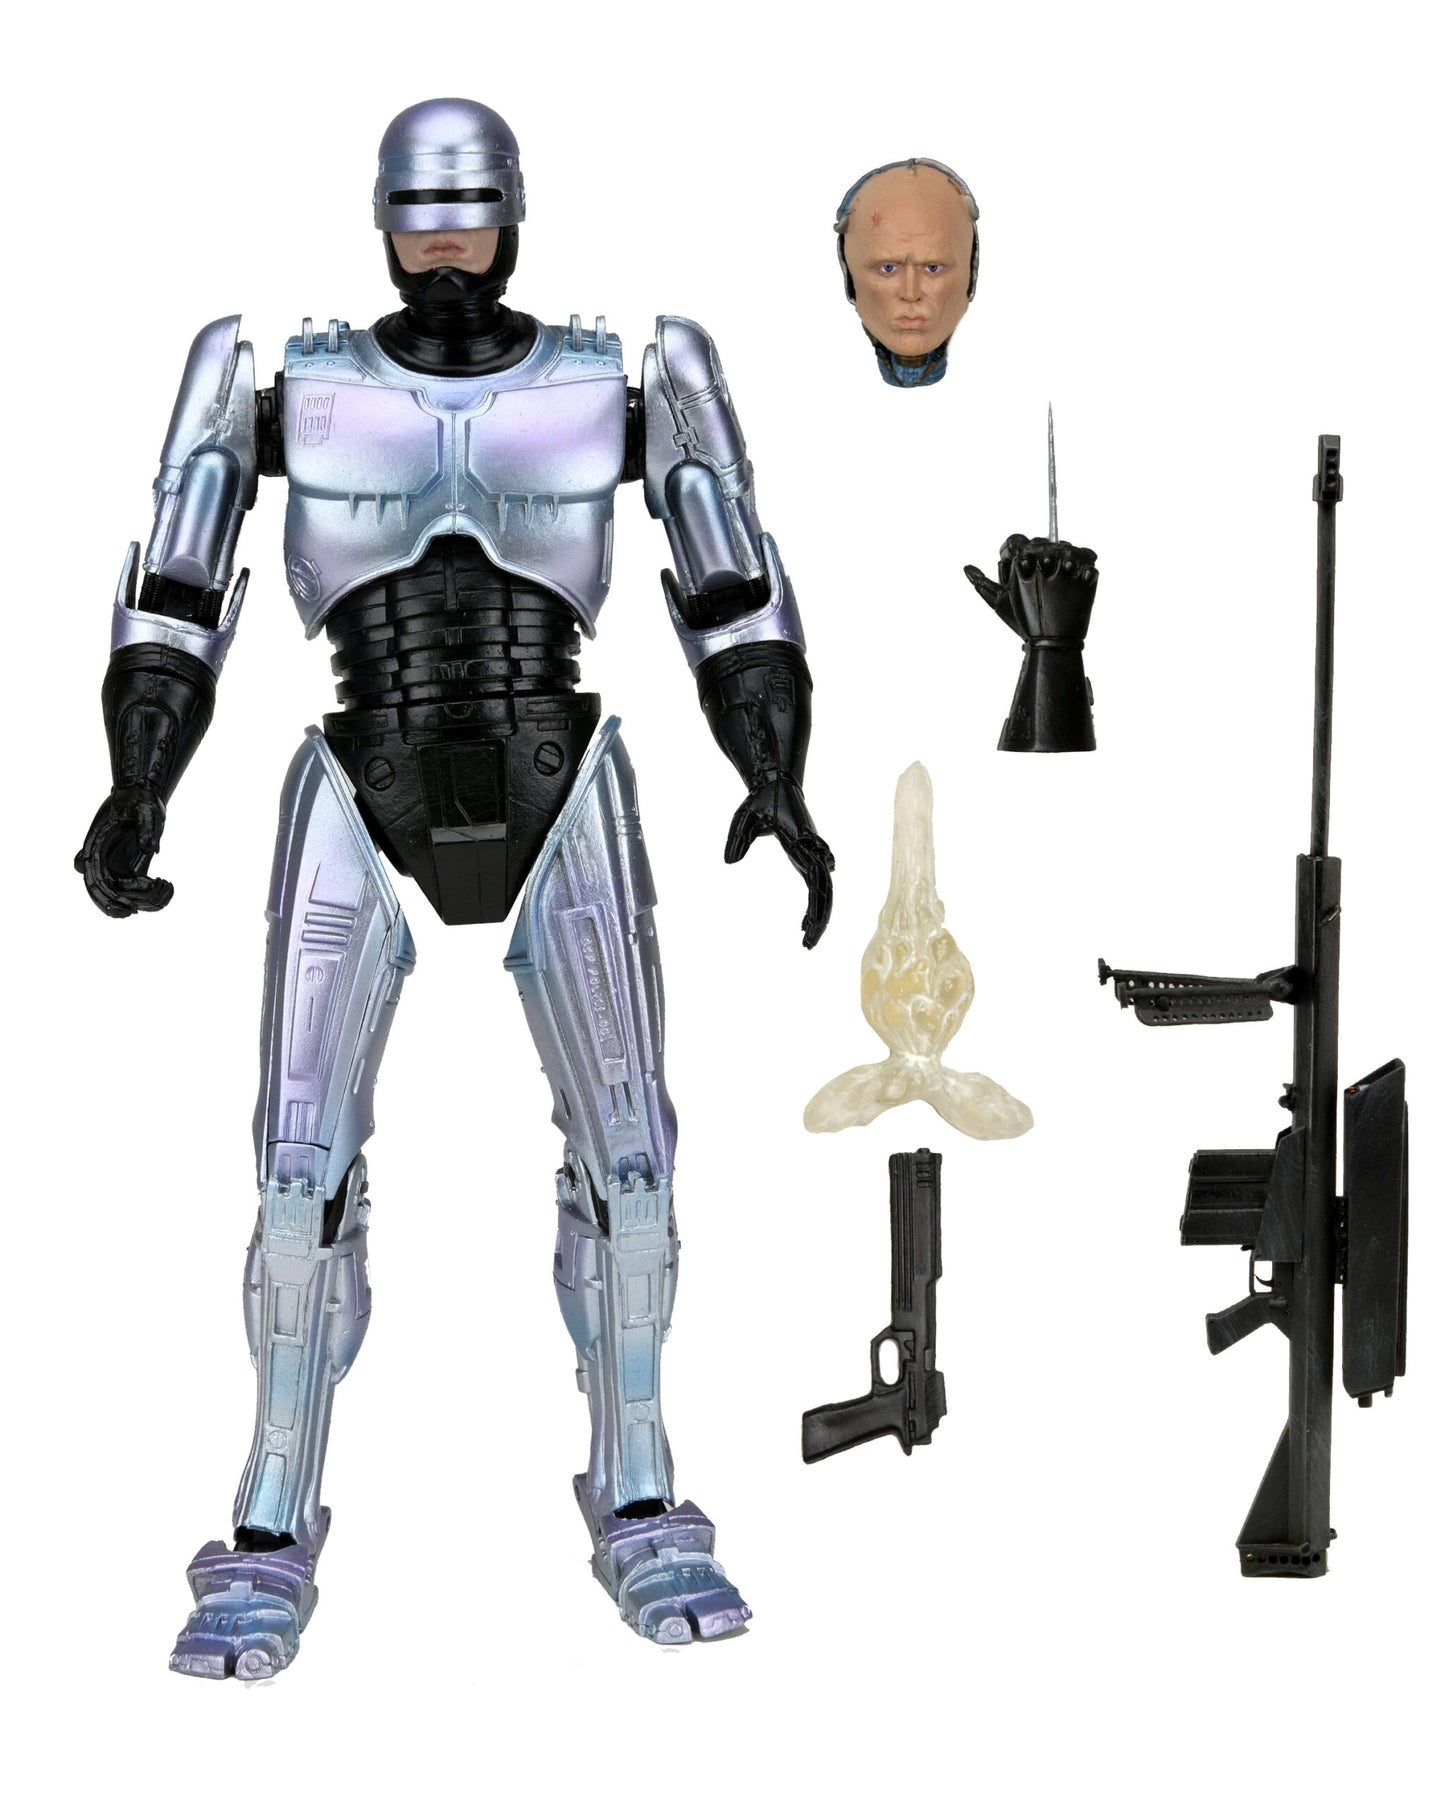 [PREORDER] Robocop - 7" Scale Action Figure - Ultimate Robocop